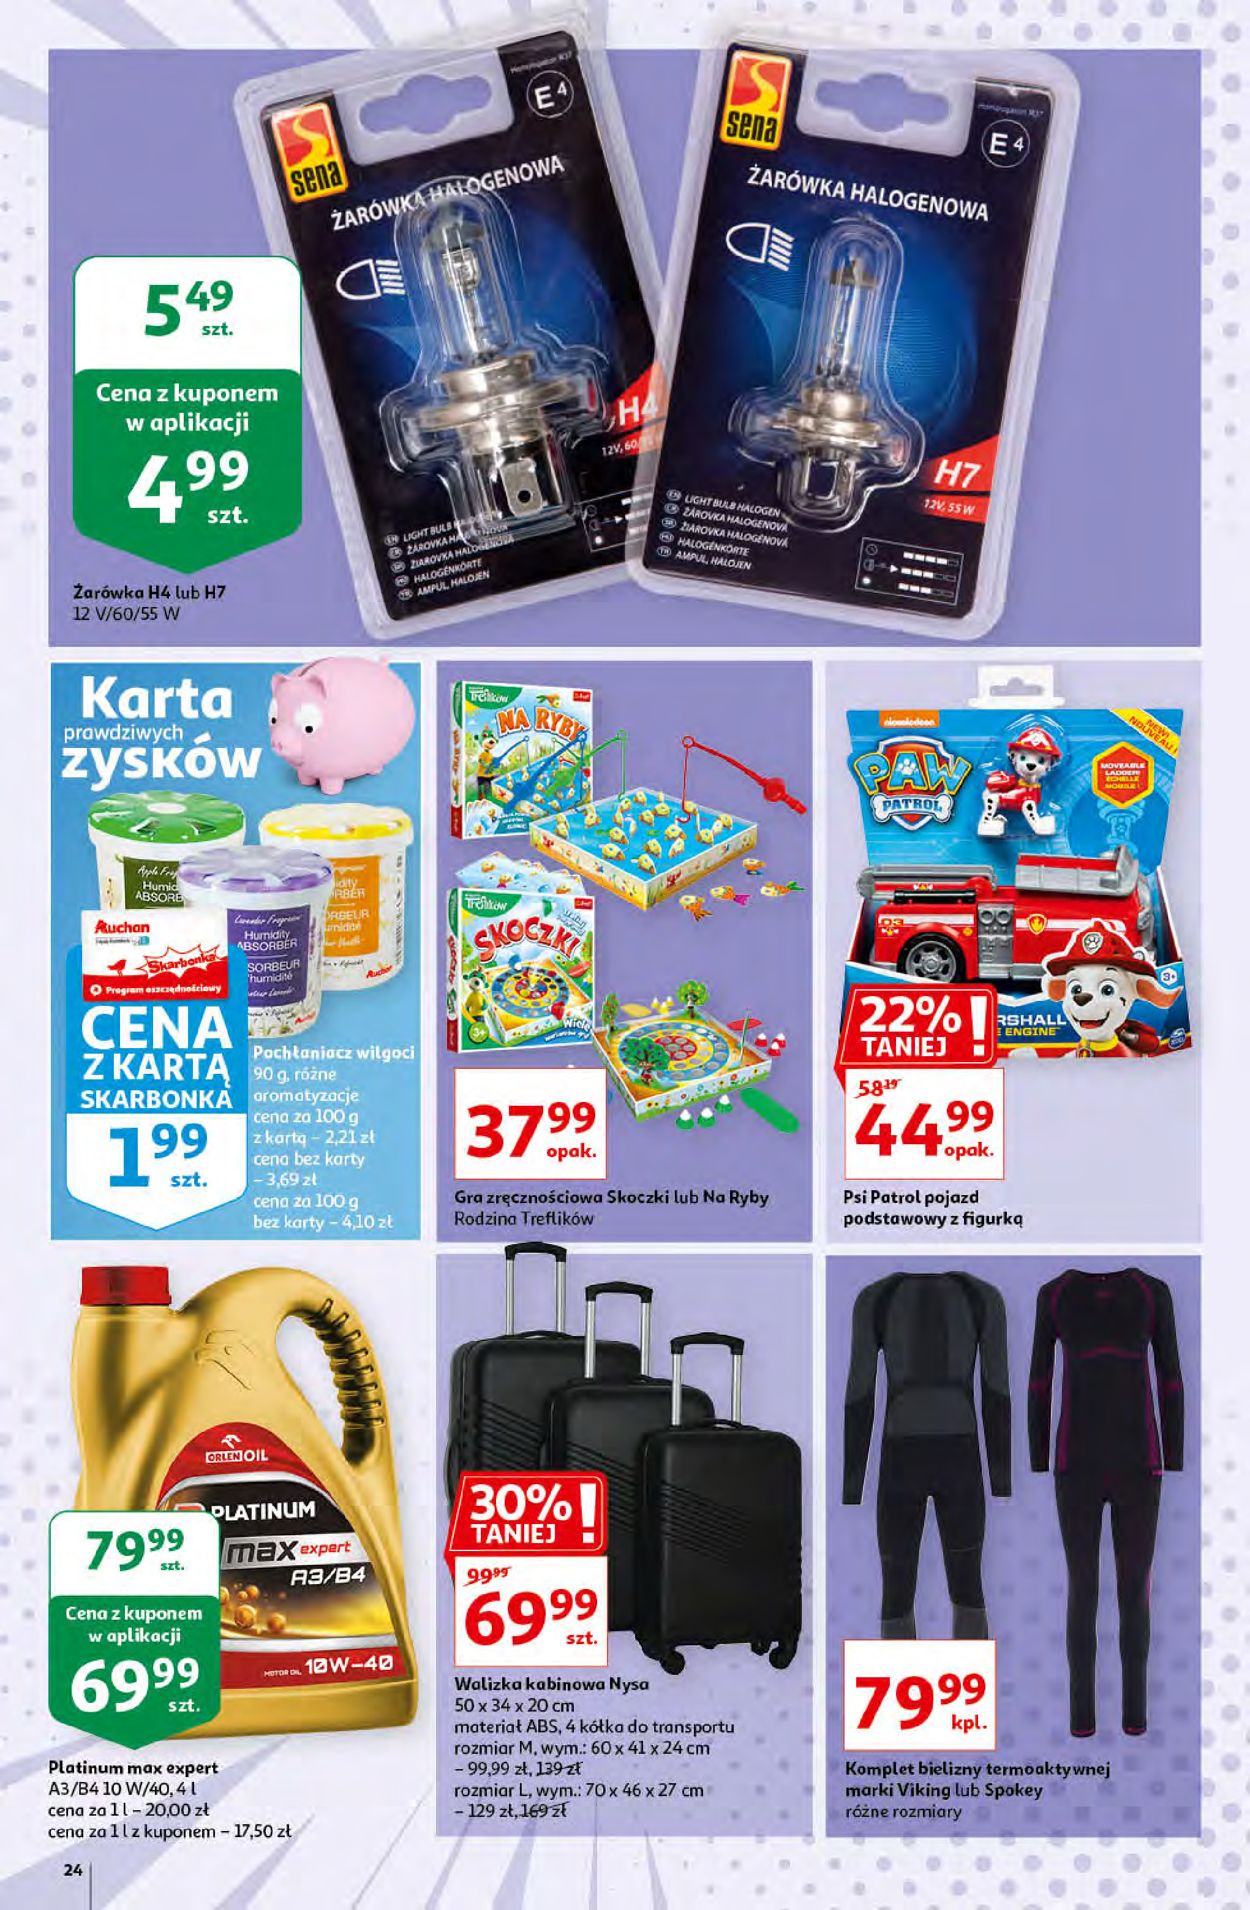 Auchan Gazetka od 15.10.2020